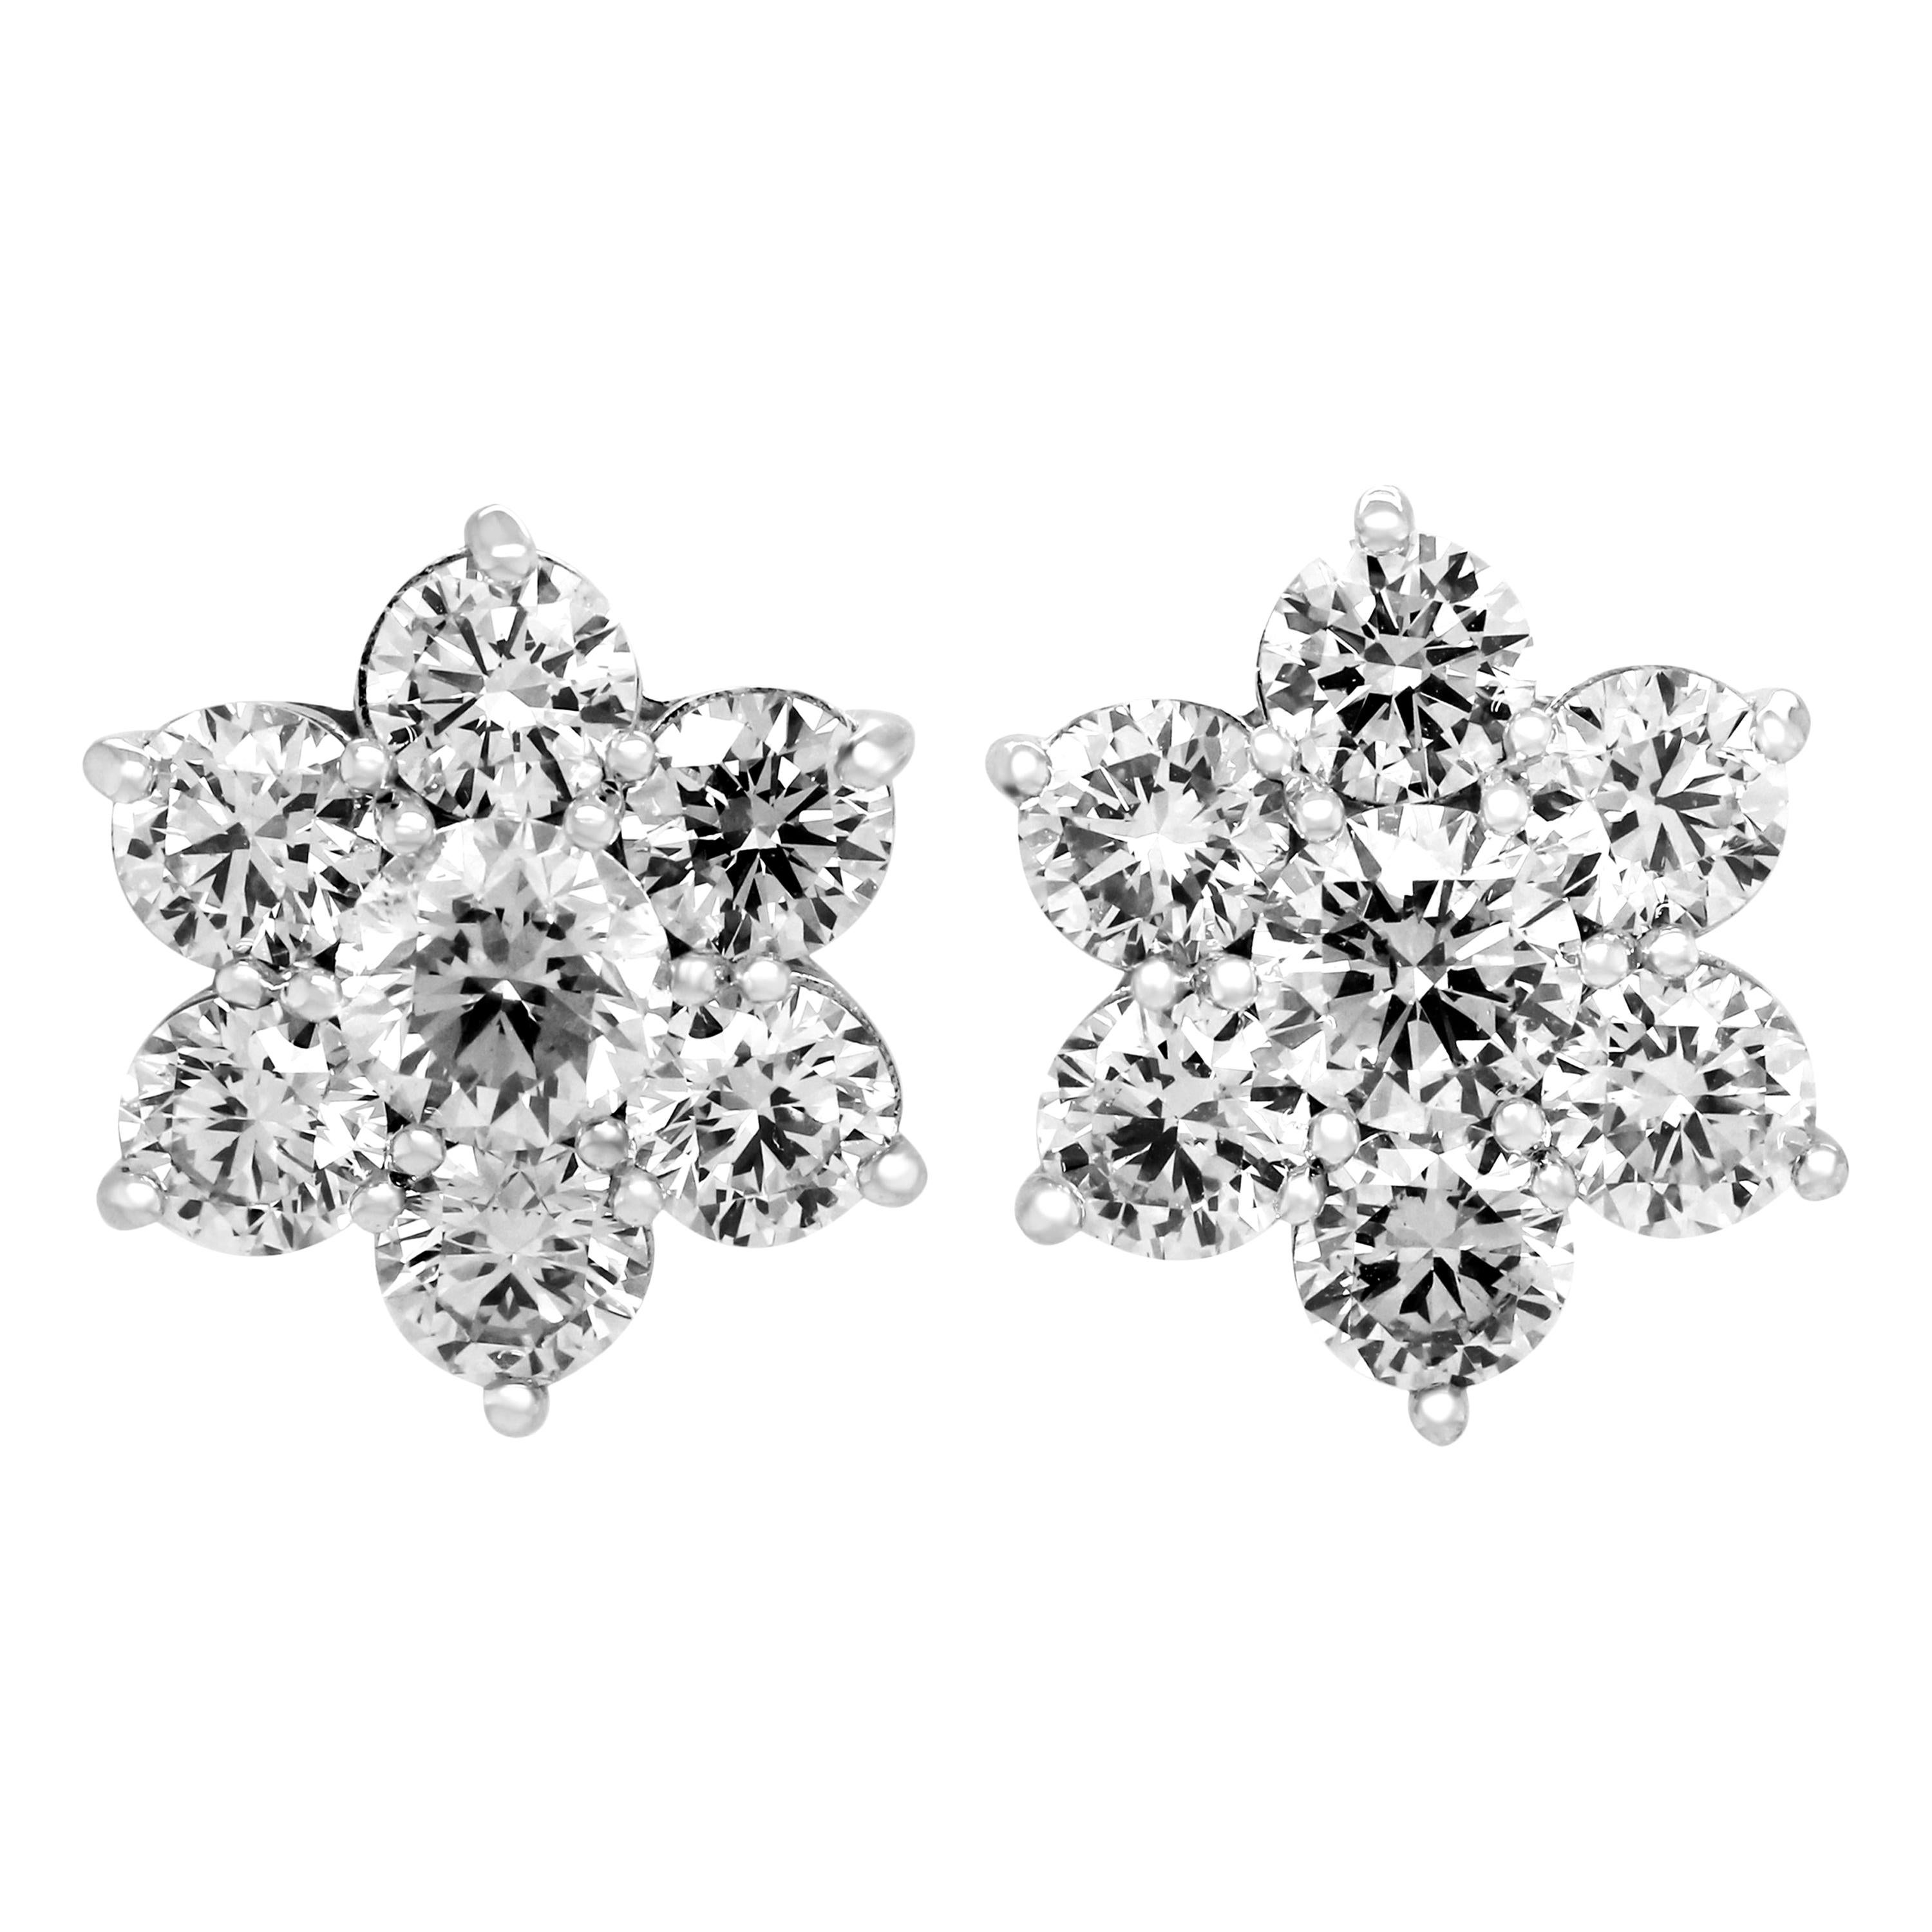 Seven Diamond 3.68 Carat 18 Karat White Gold Cluster Stud Earrings